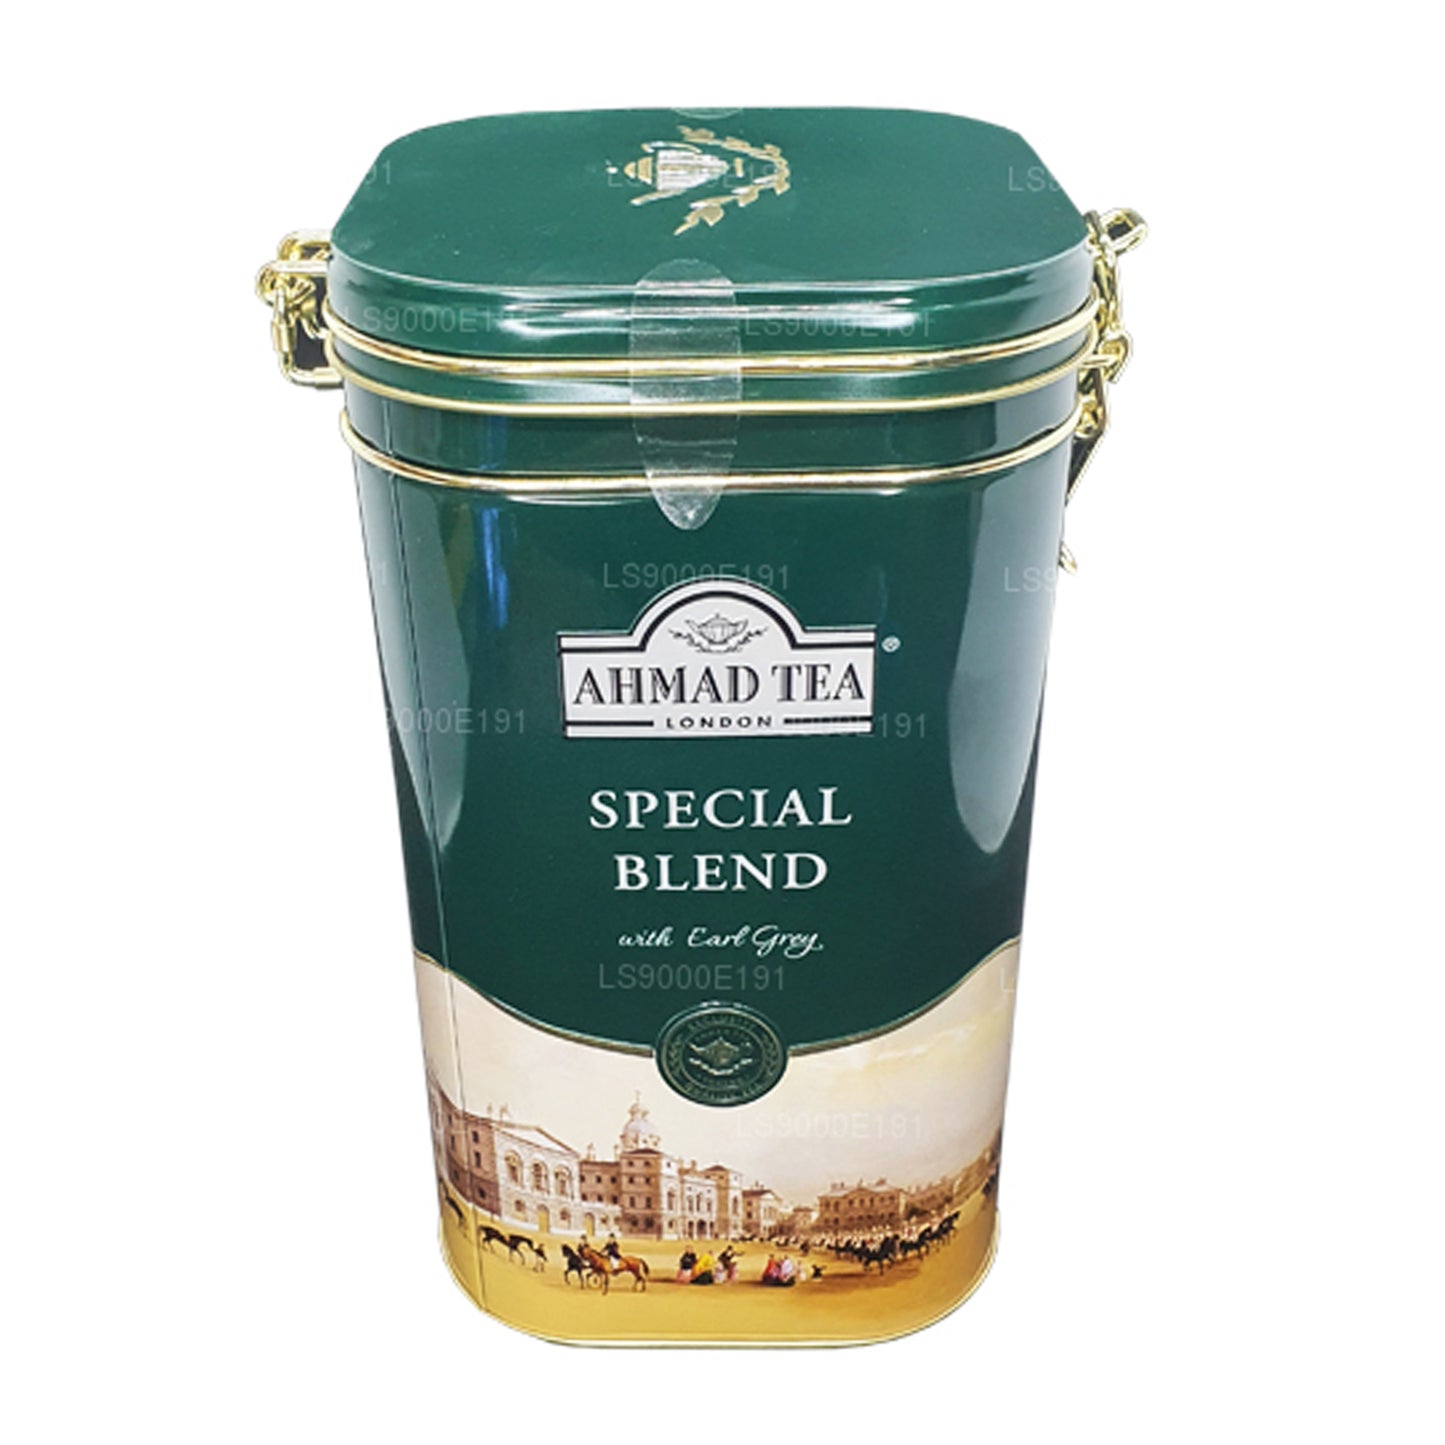 Ahmad Tea Special Blend Zawias Caddy (450g)